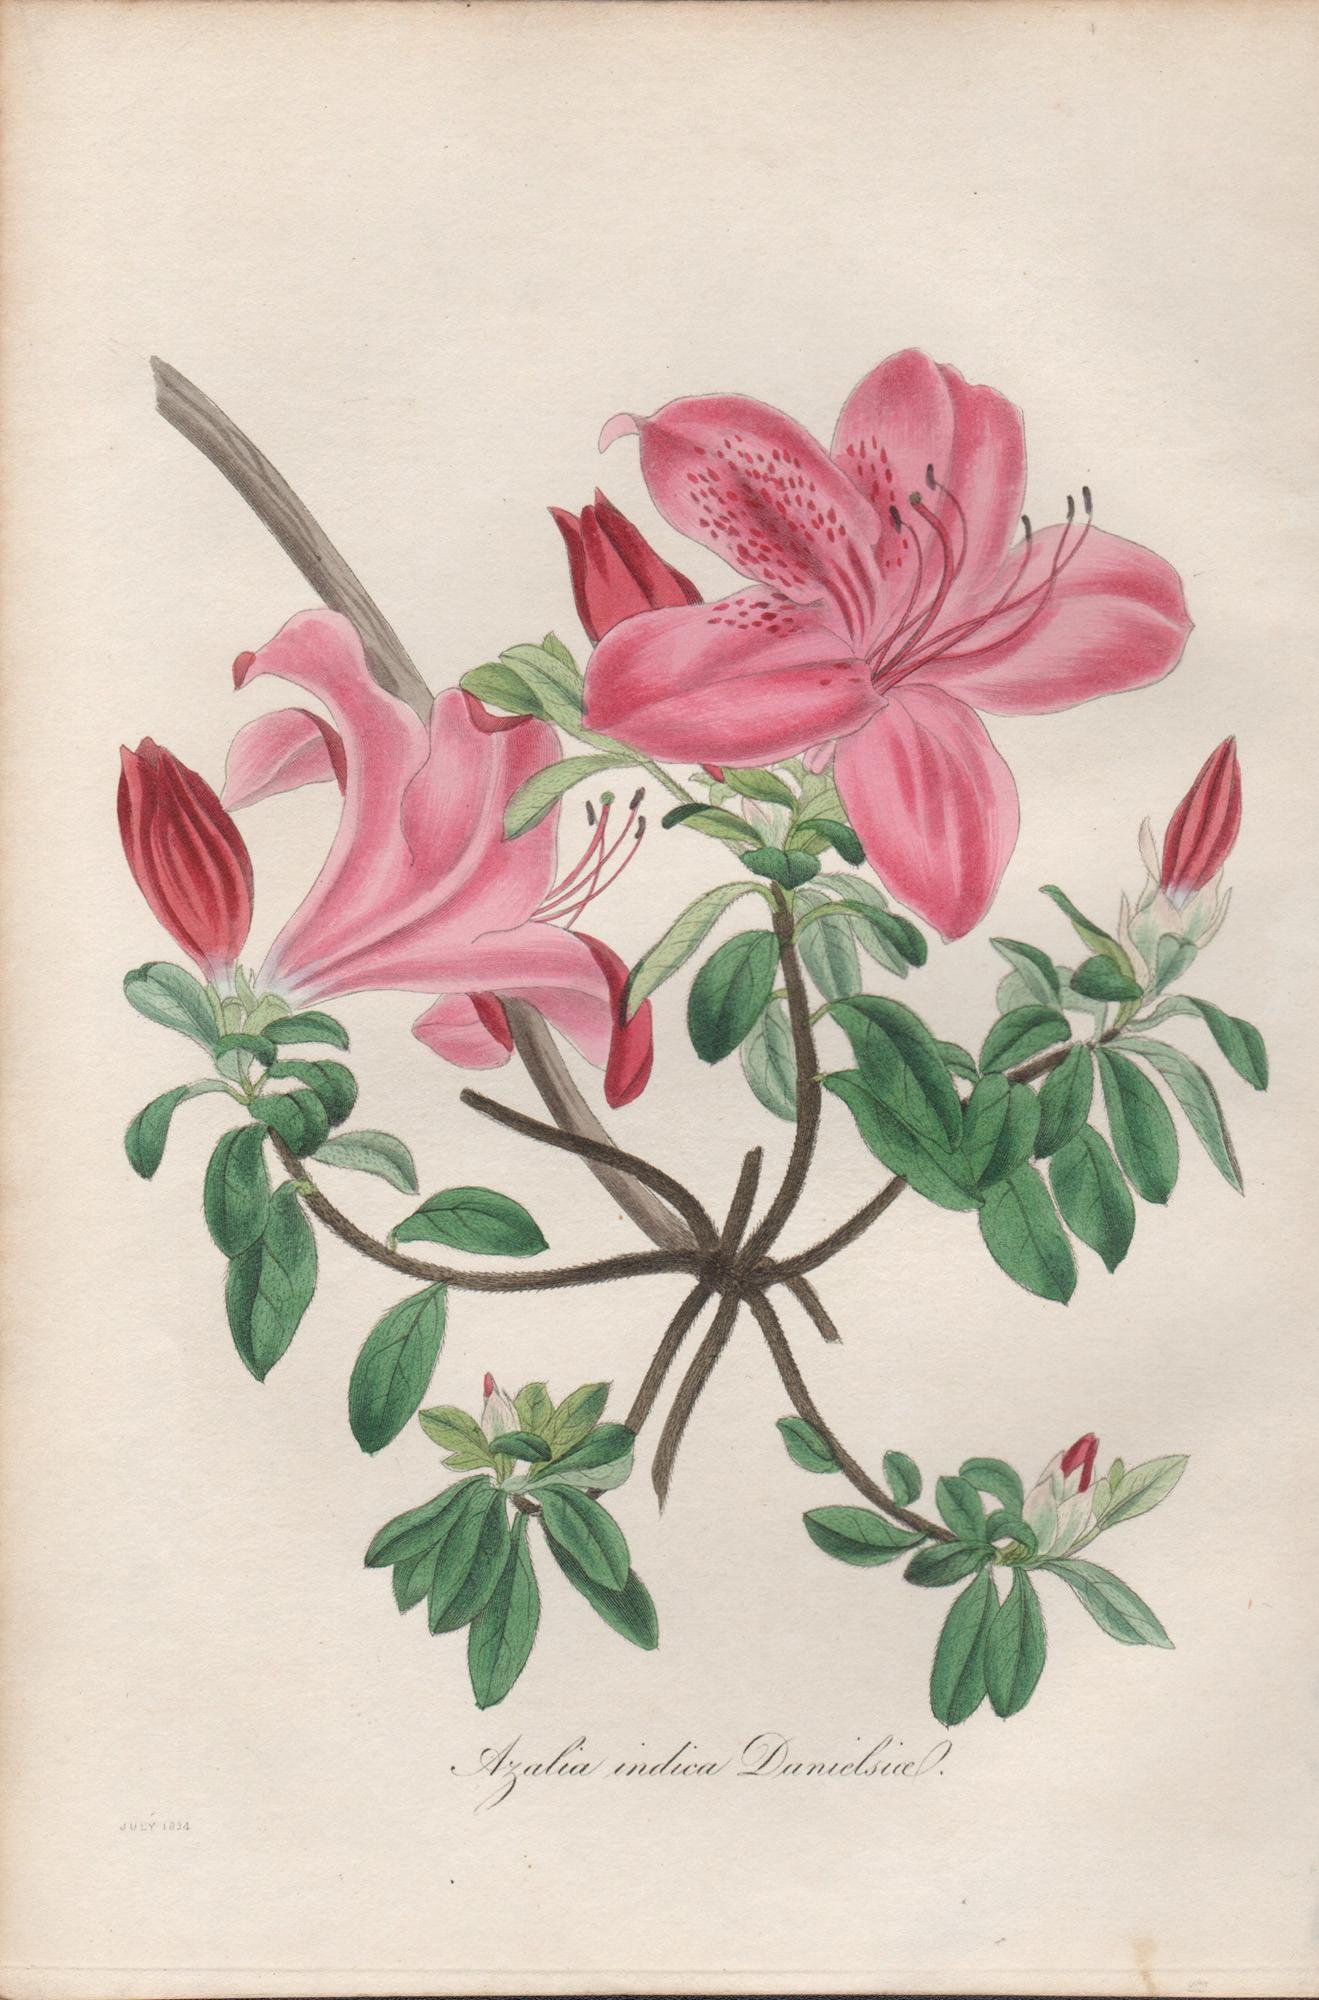 Azalea indica danielsiana, antike botanische rosa Blumengravur